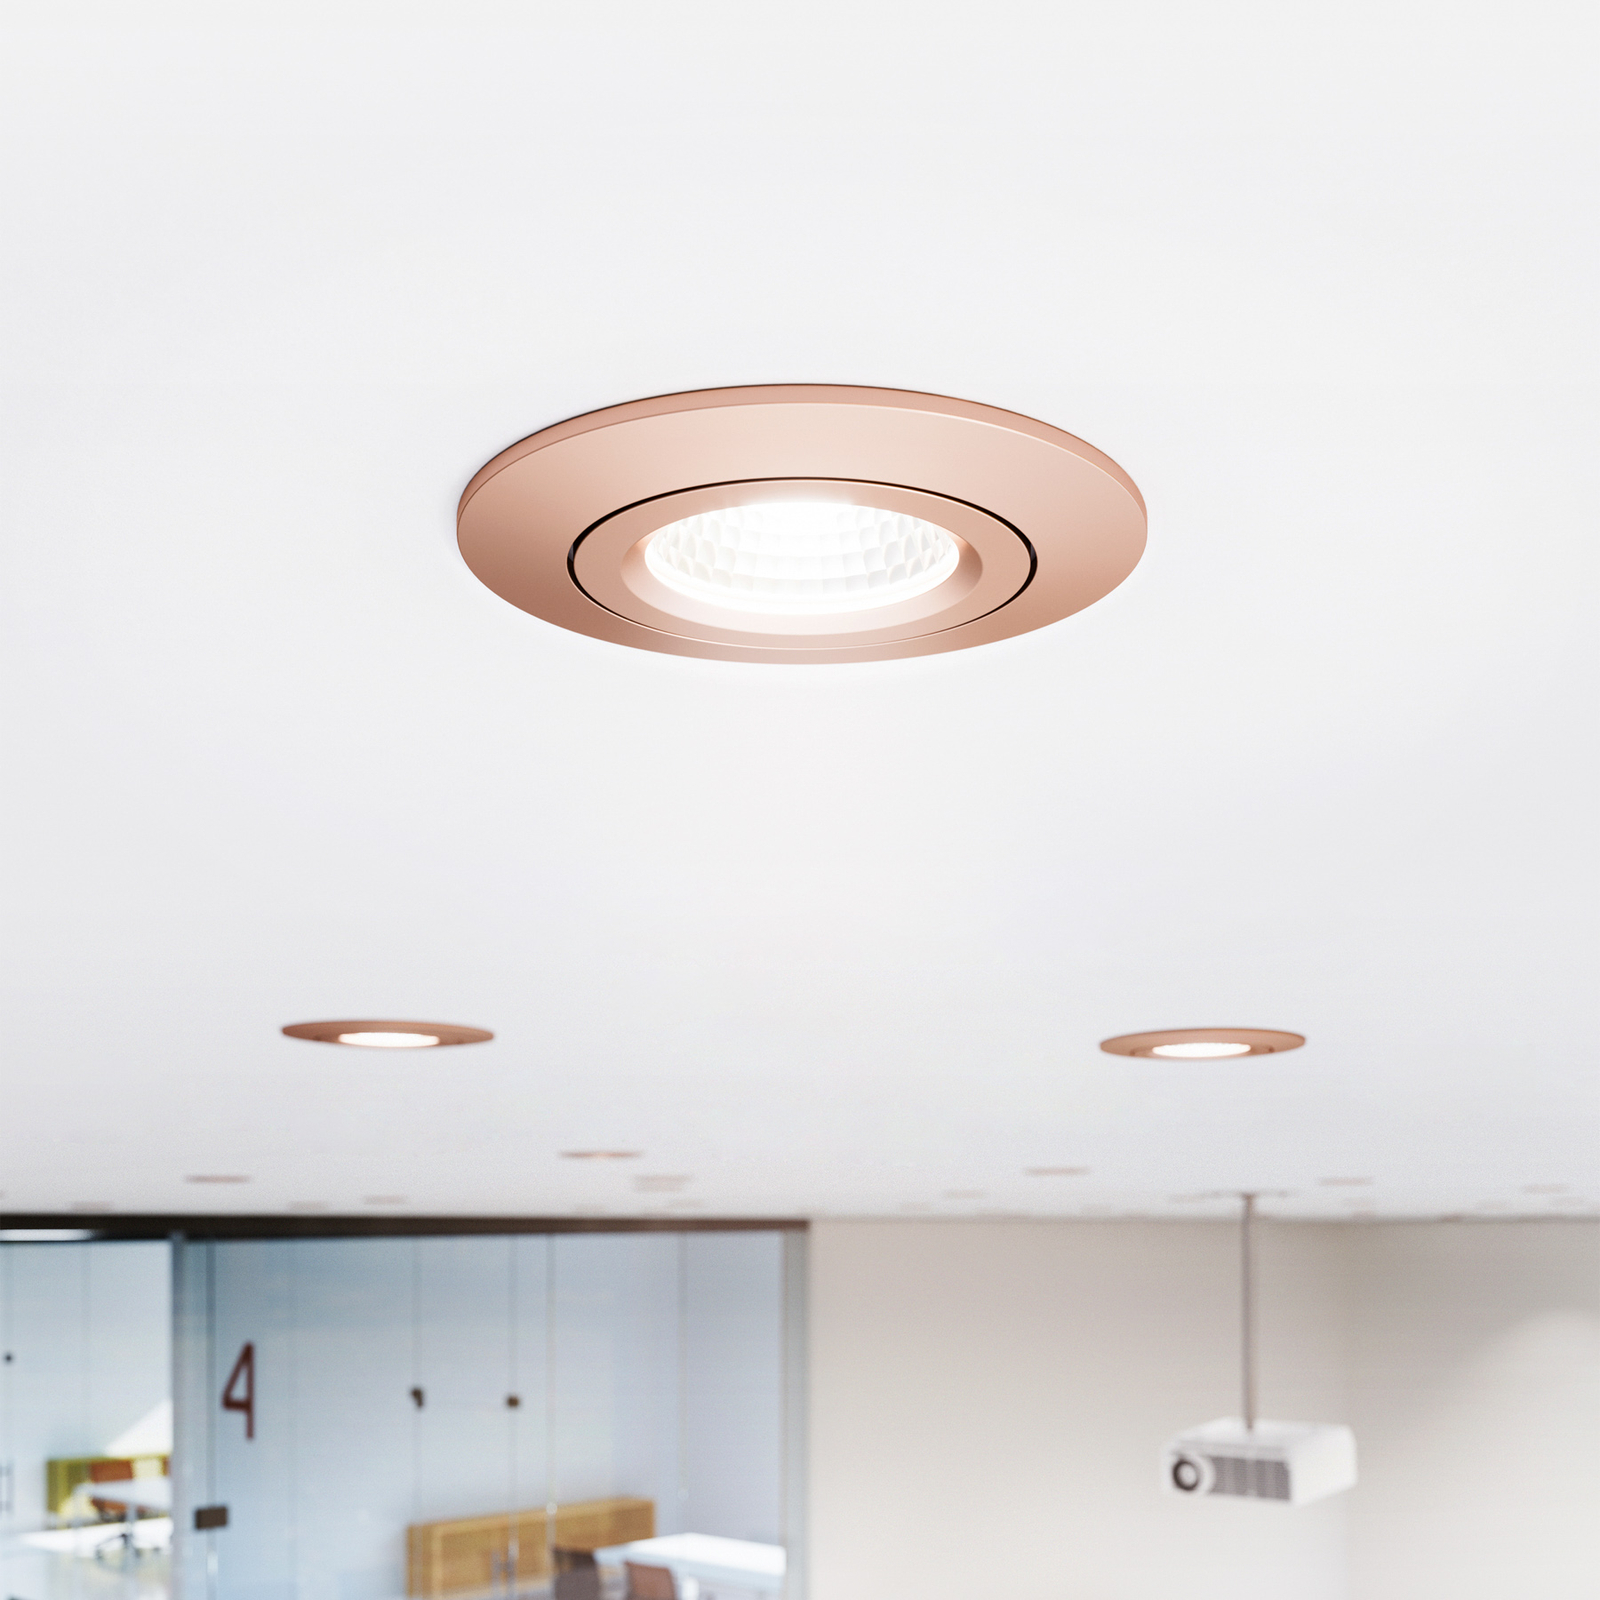 LED Spot à encastrer au plafond Diled, Ø 8,5 cm, 6 W, Dim-To-Warm, rosé